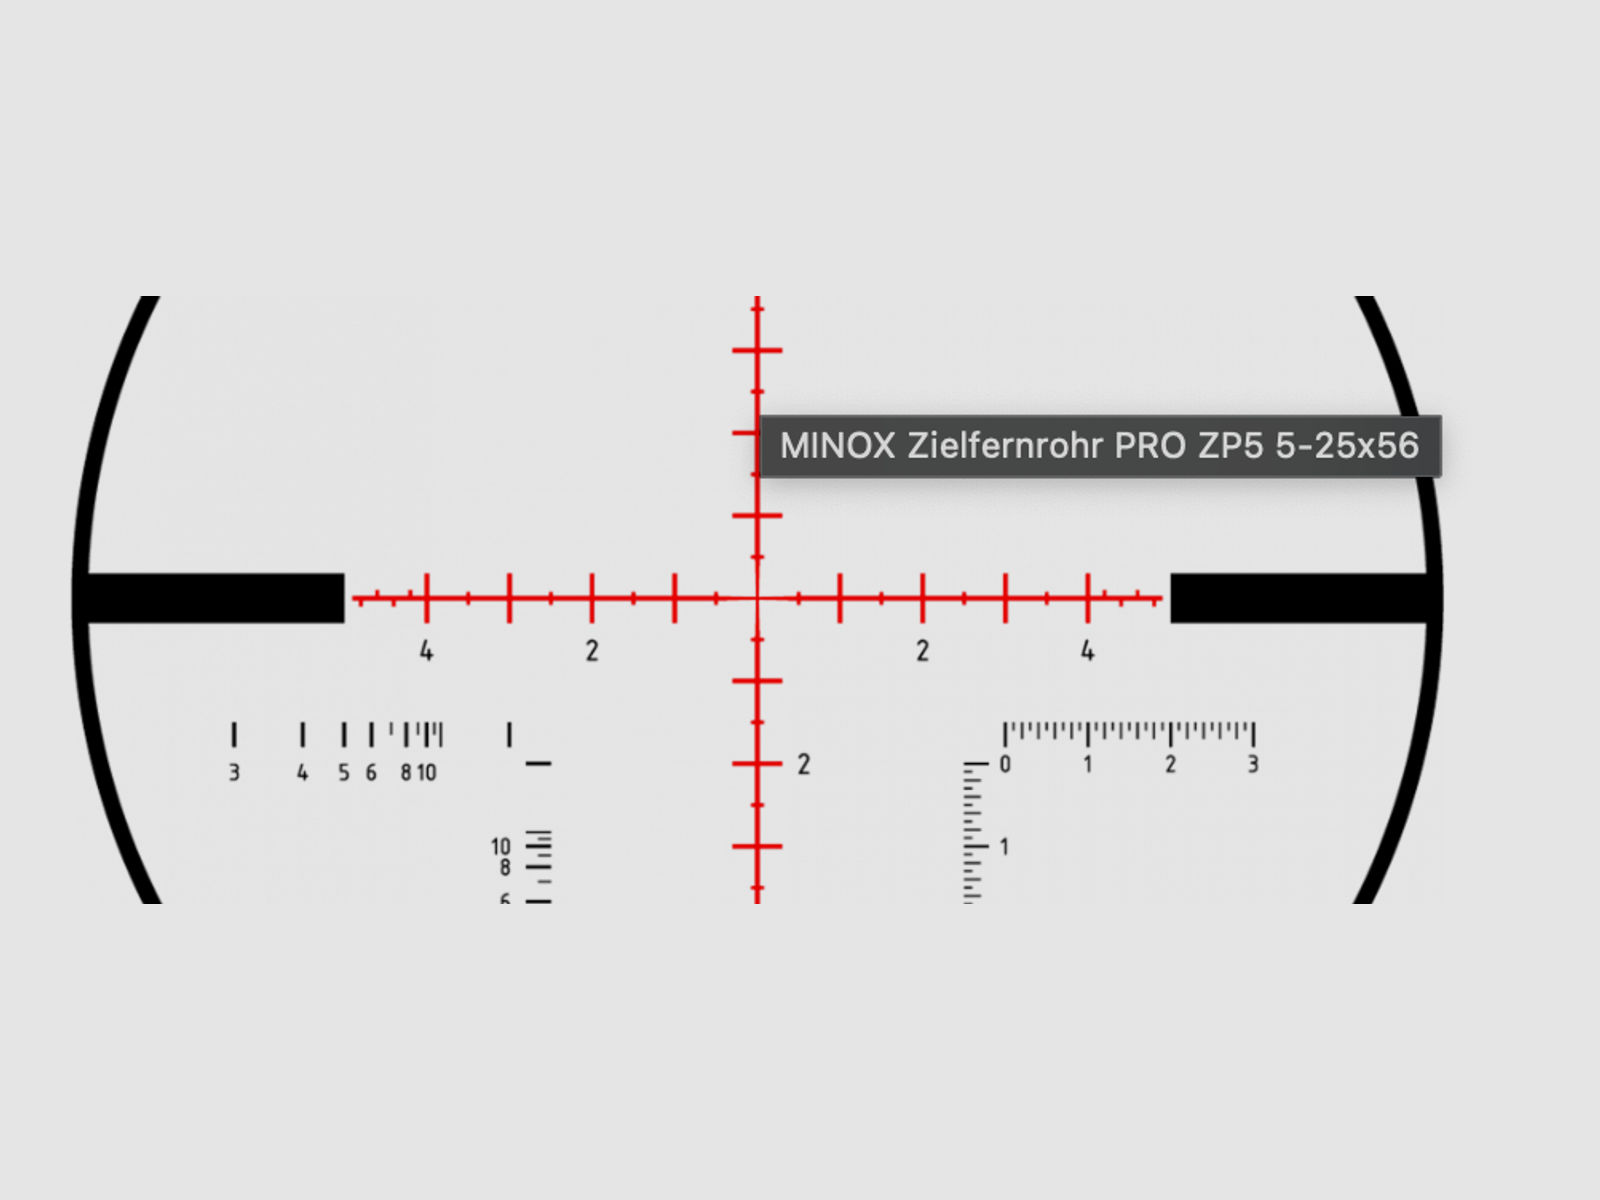 MINOX PRO ZP5 5-25x56 Zielfernrohr